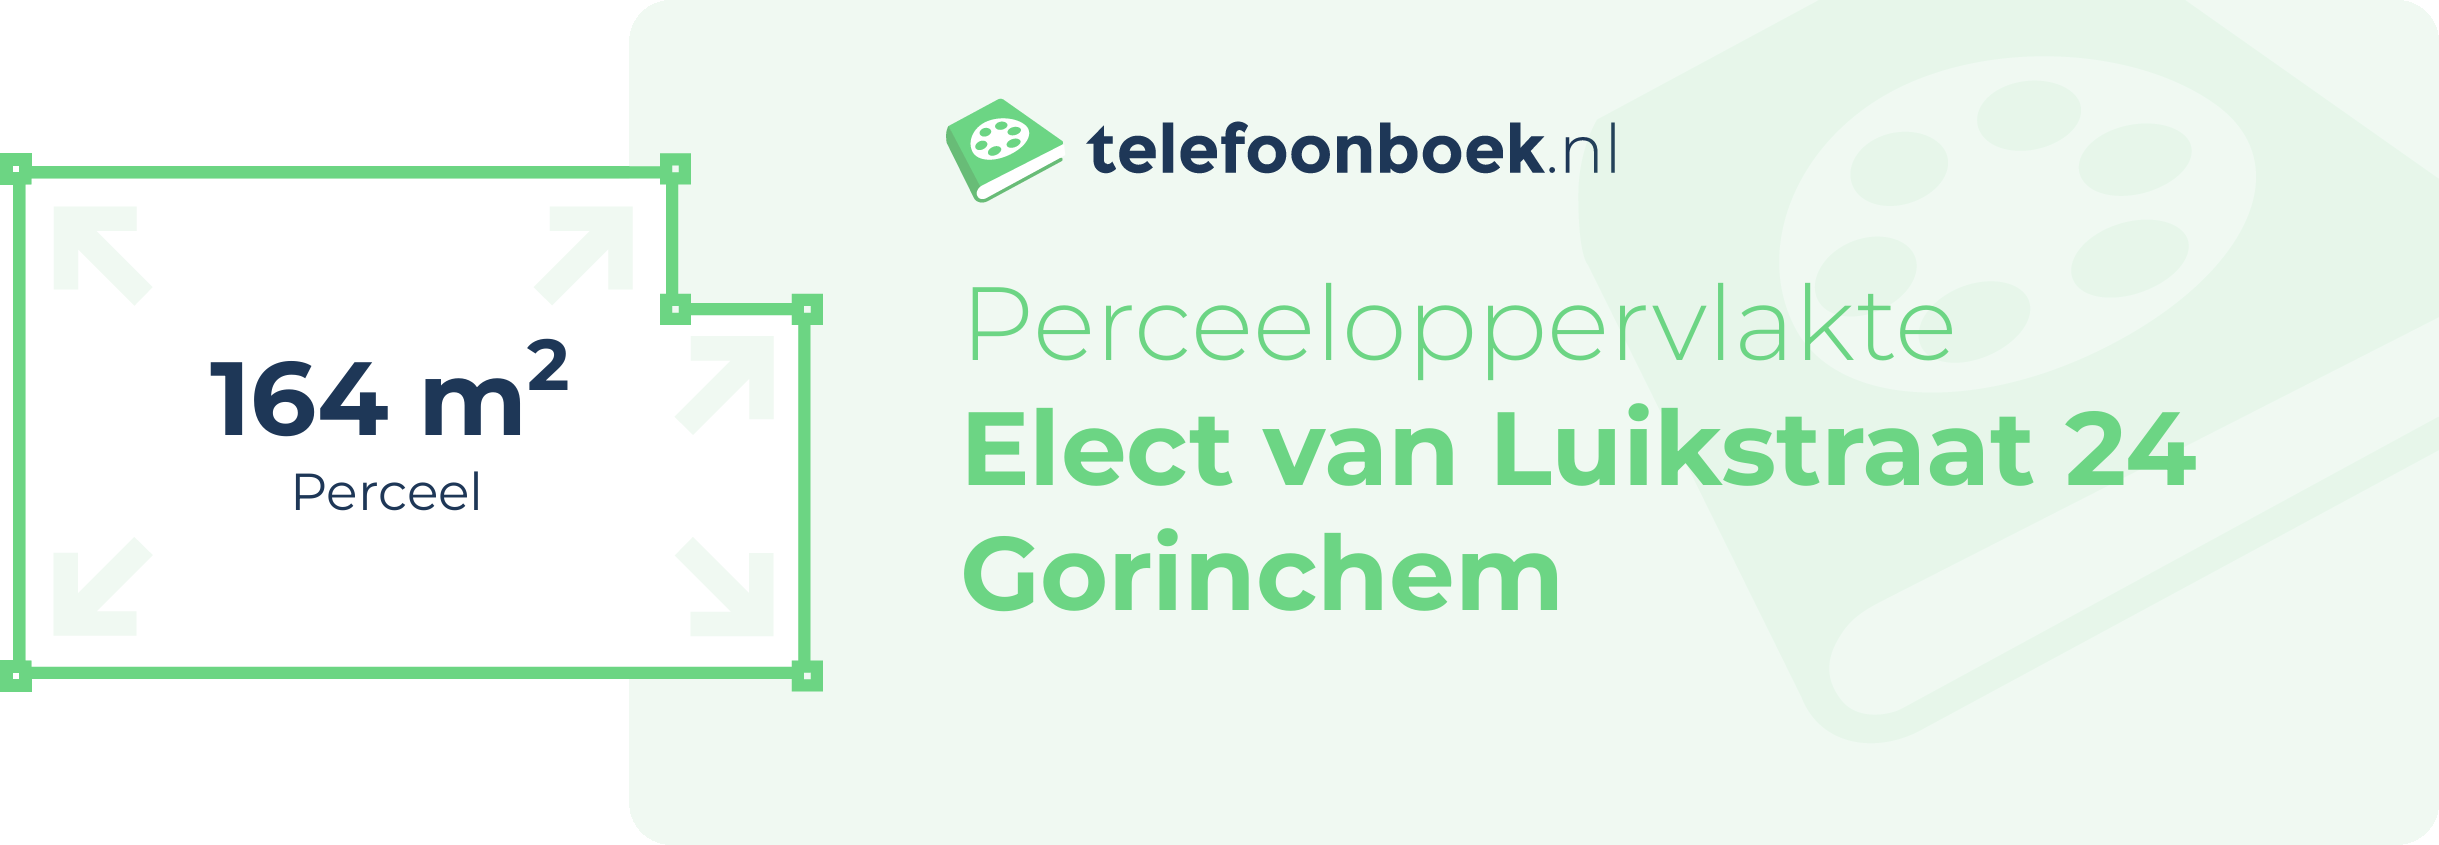 Perceeloppervlakte Elect Van Luikstraat 24 Gorinchem